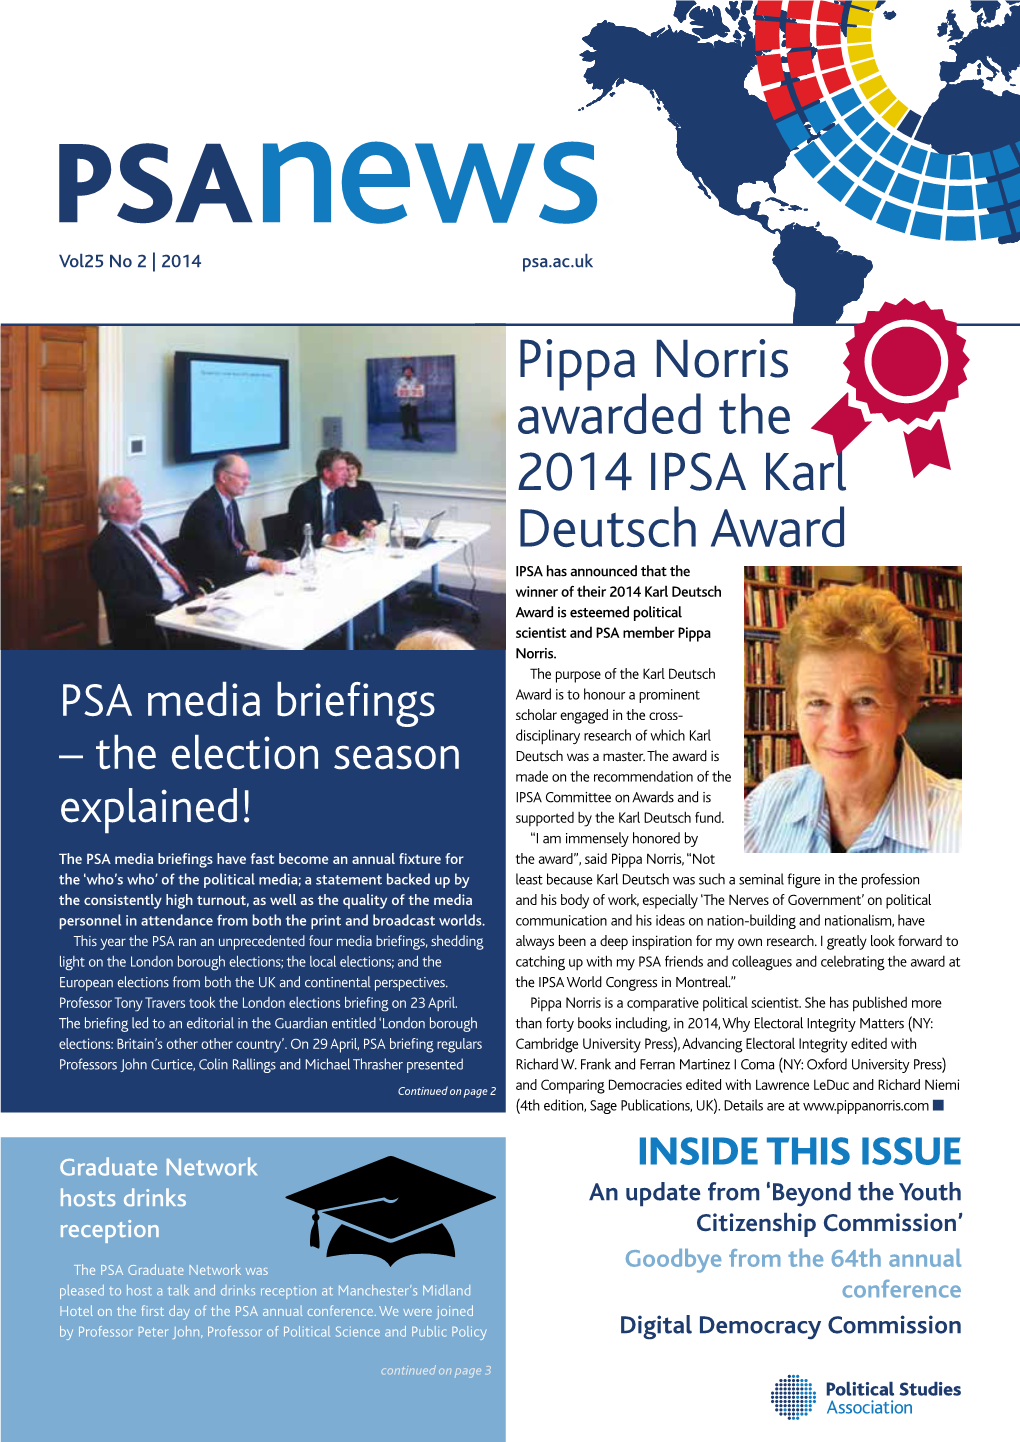 Pippa Norris Awarded the 2014 IPSA Karl Deutsch Award